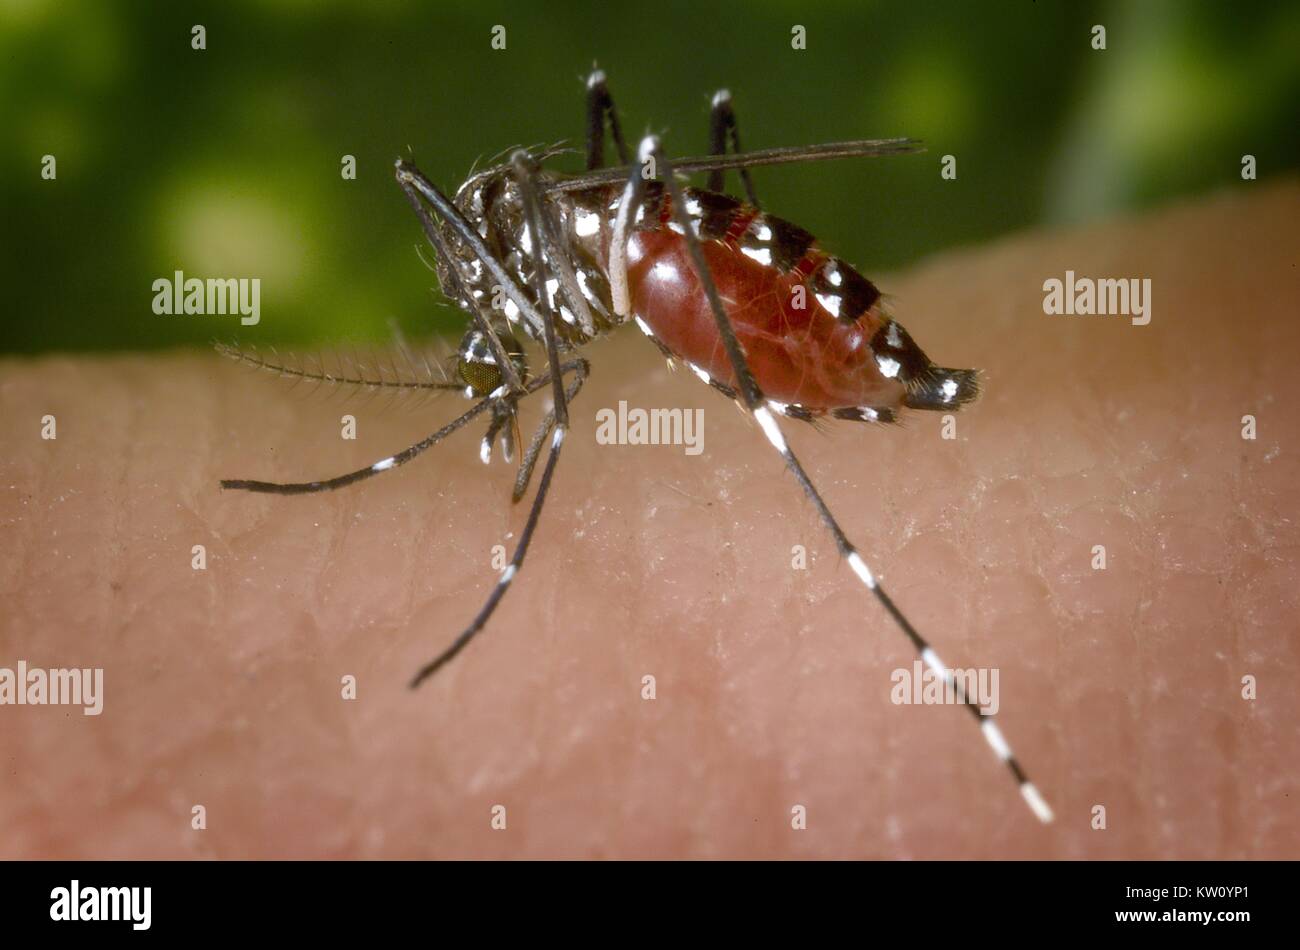 Un sangue-congestioni femmine Aedes albopictus mosquito alimentazione su un ospite umano. Al di sotto di successo della trasmissione sperimentale, Aedes albopictus è stata trovata essere un vettore del virus del Nilo occidentale. Aedes è un genere della famiglia Culicine di zanzare. Immagine cortesia CDC, 2002. Foto Stock